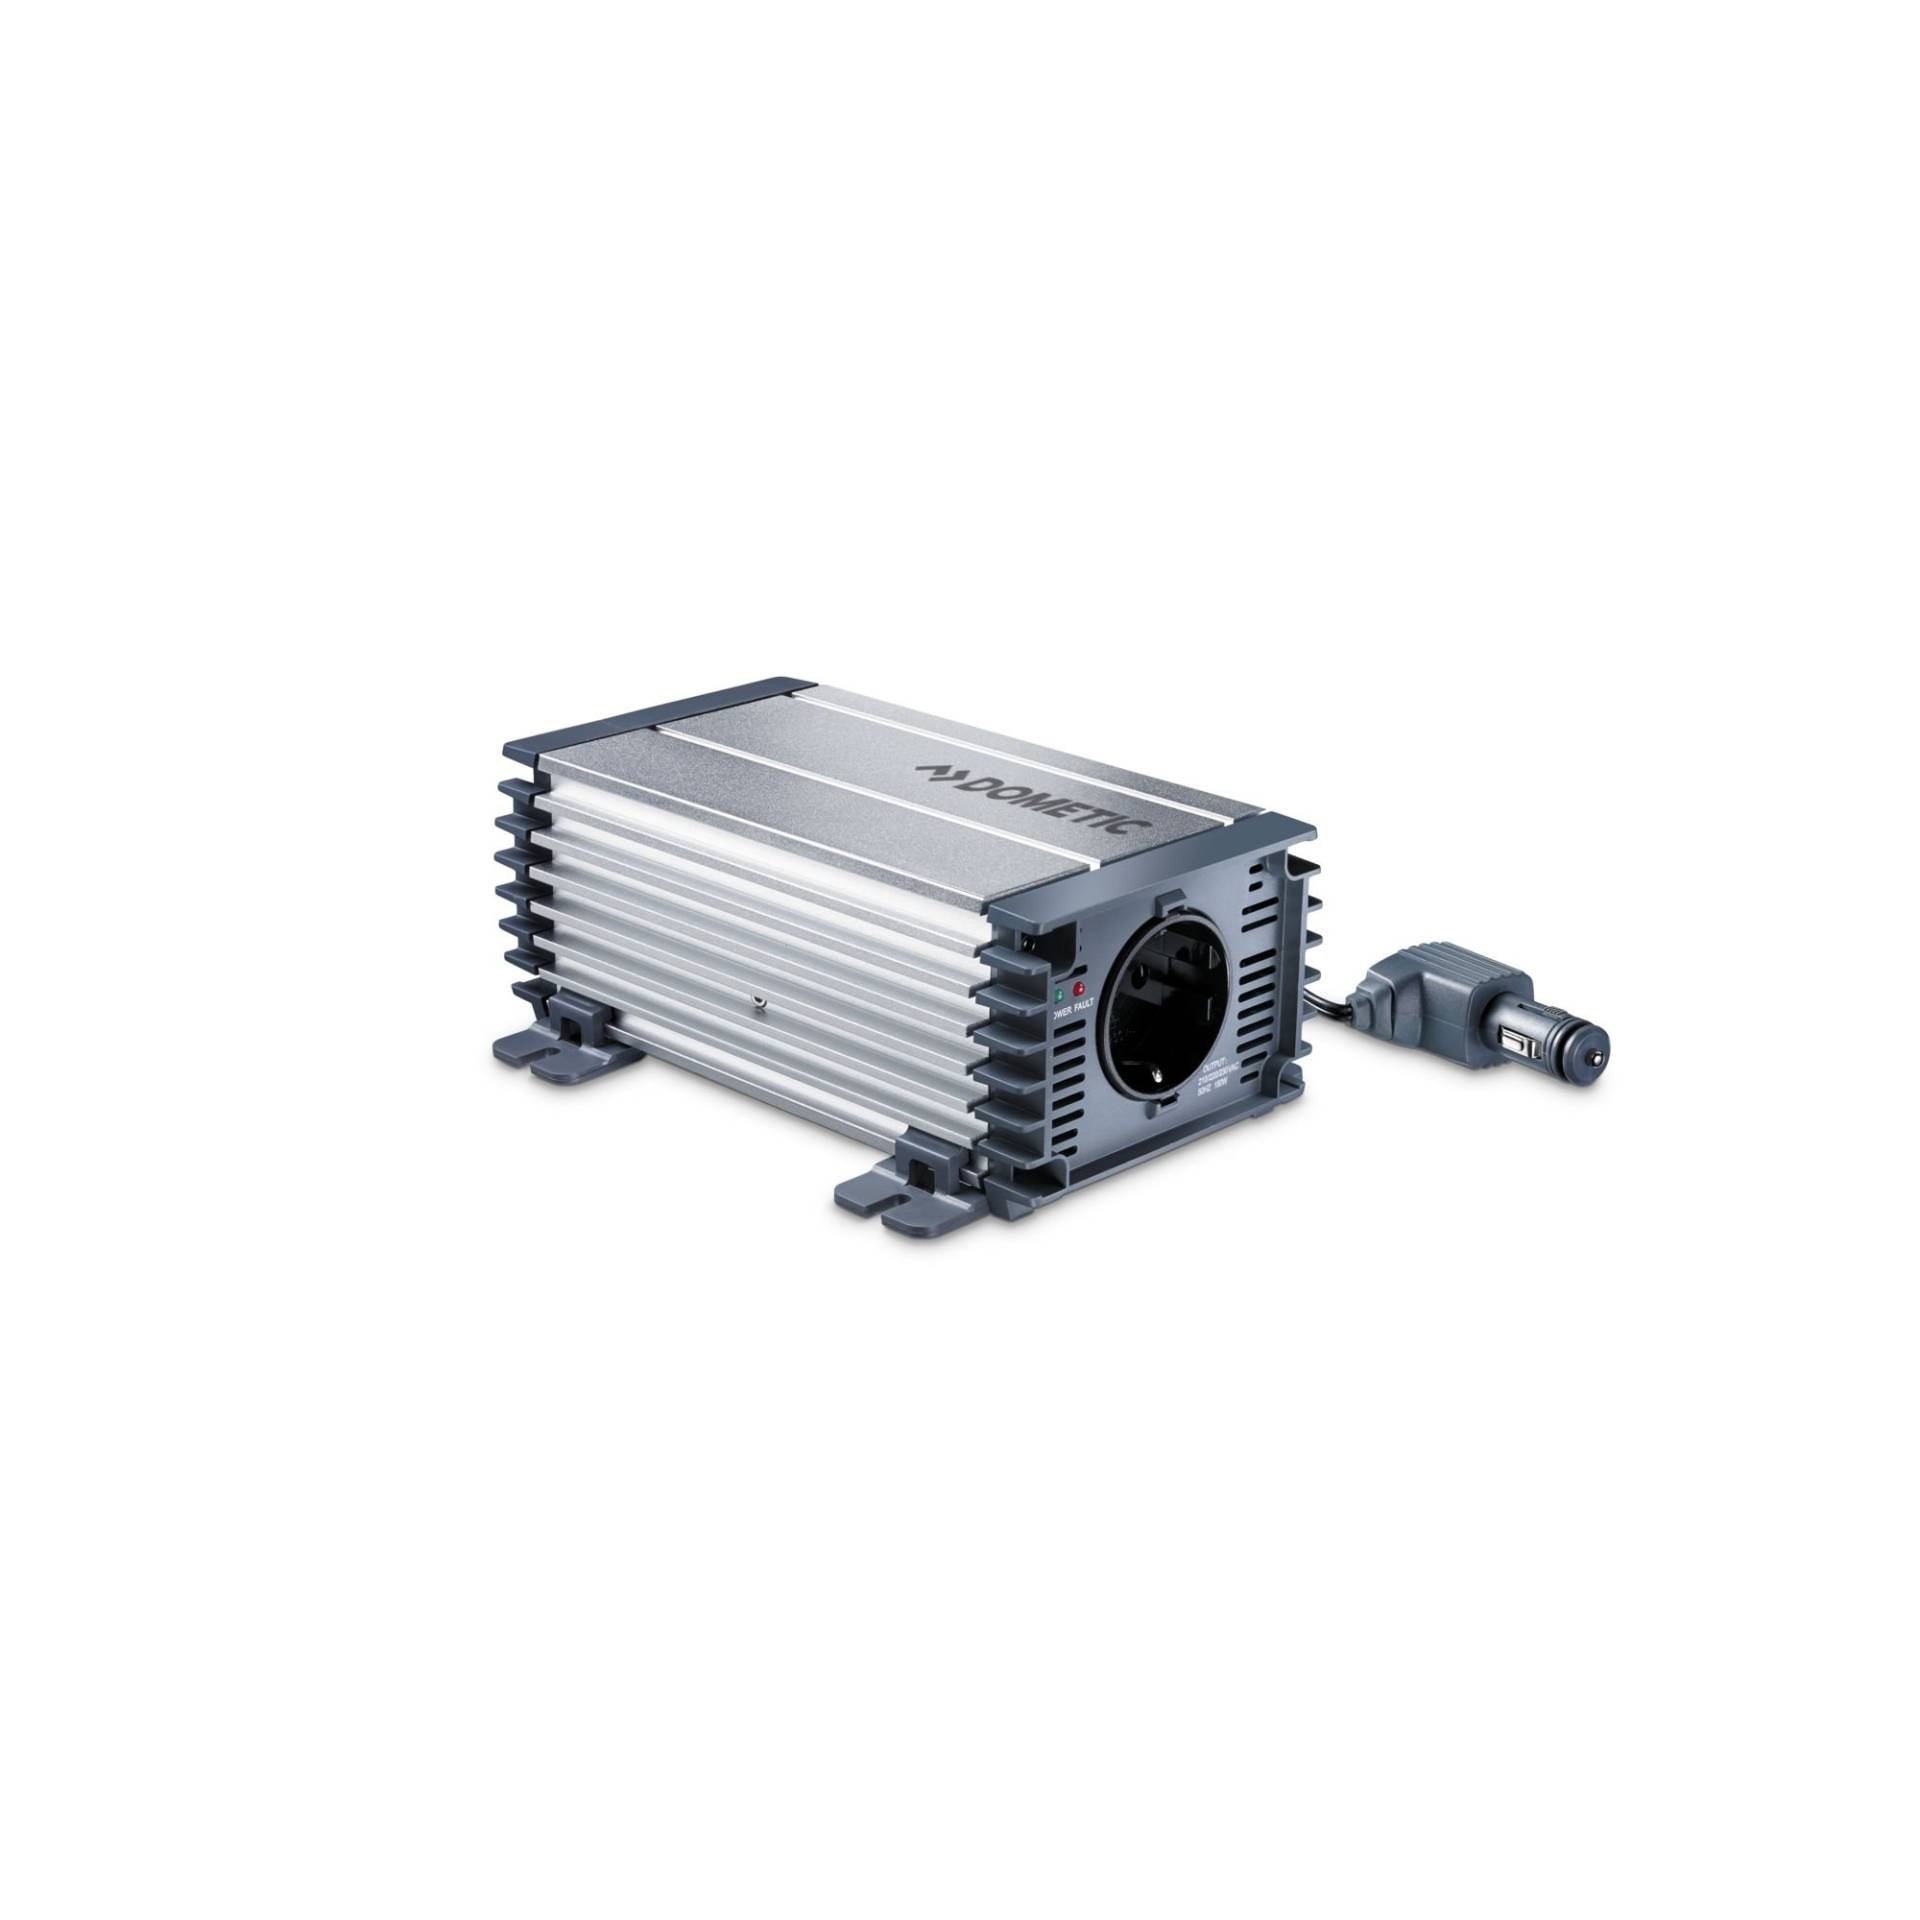 DOMETIC PP 152 Sinus-Wechselrichter, Auto Spannungswandler von 12 V auf 230 V, Überspannungsschutz, 150 W, mobile Steckdose, Inverter von DOMETIC